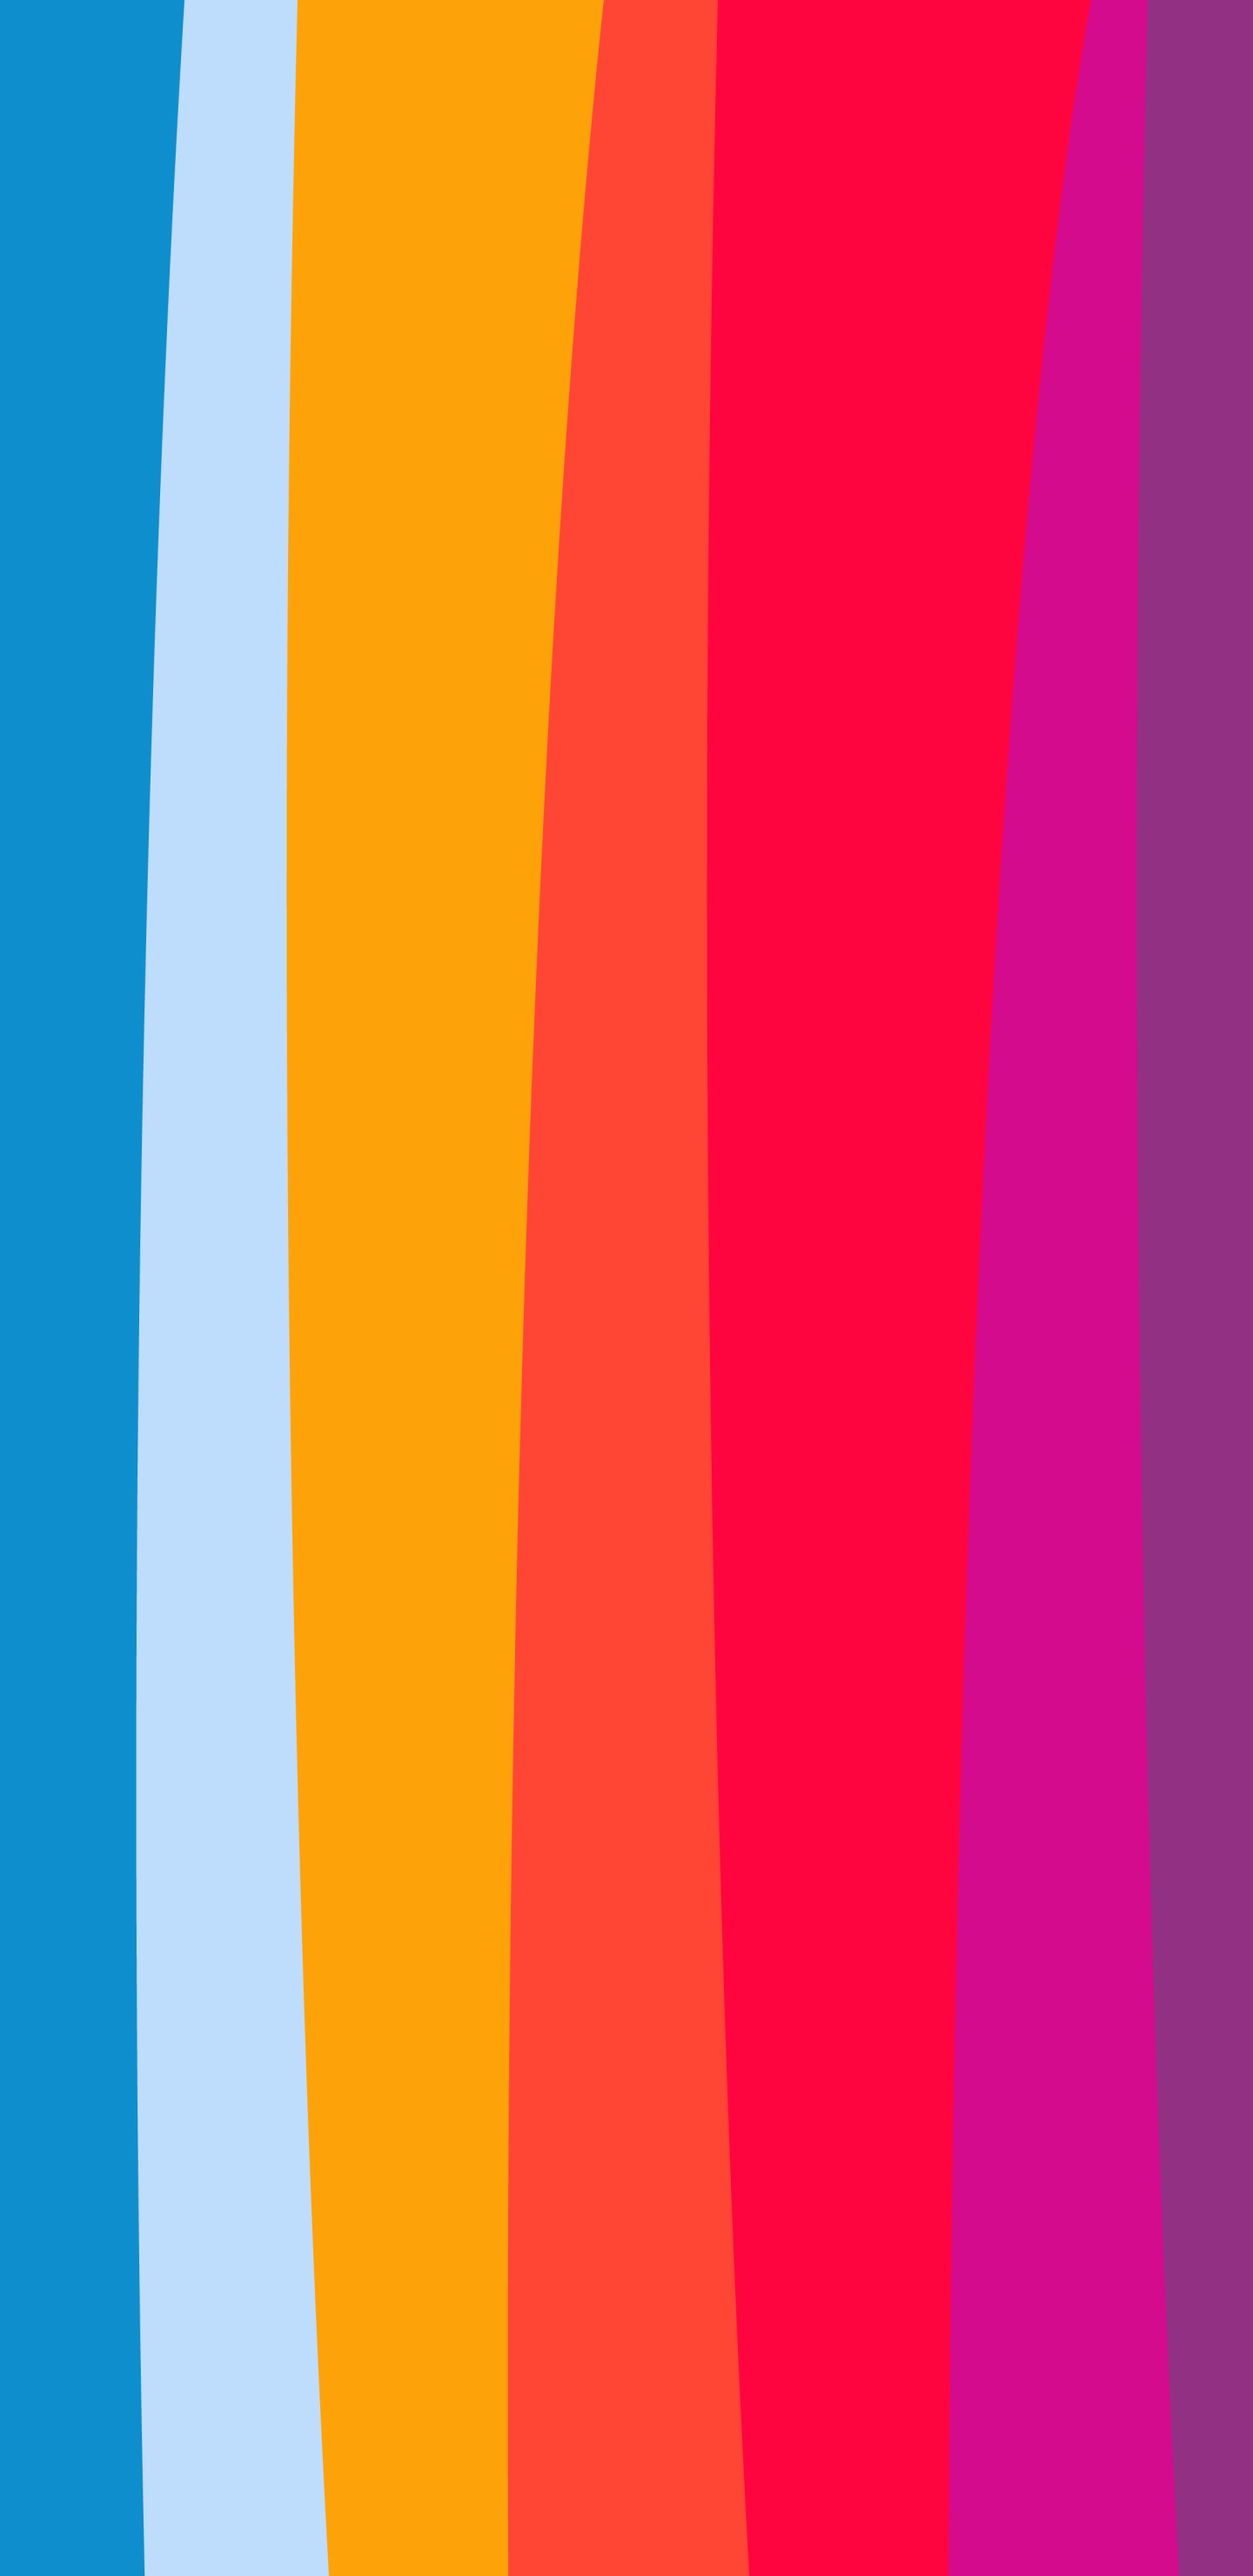 Orange, Apple, la Pureté de la Couleur, Blue, Purple. Wallpaper in 1440x2960 Resolution